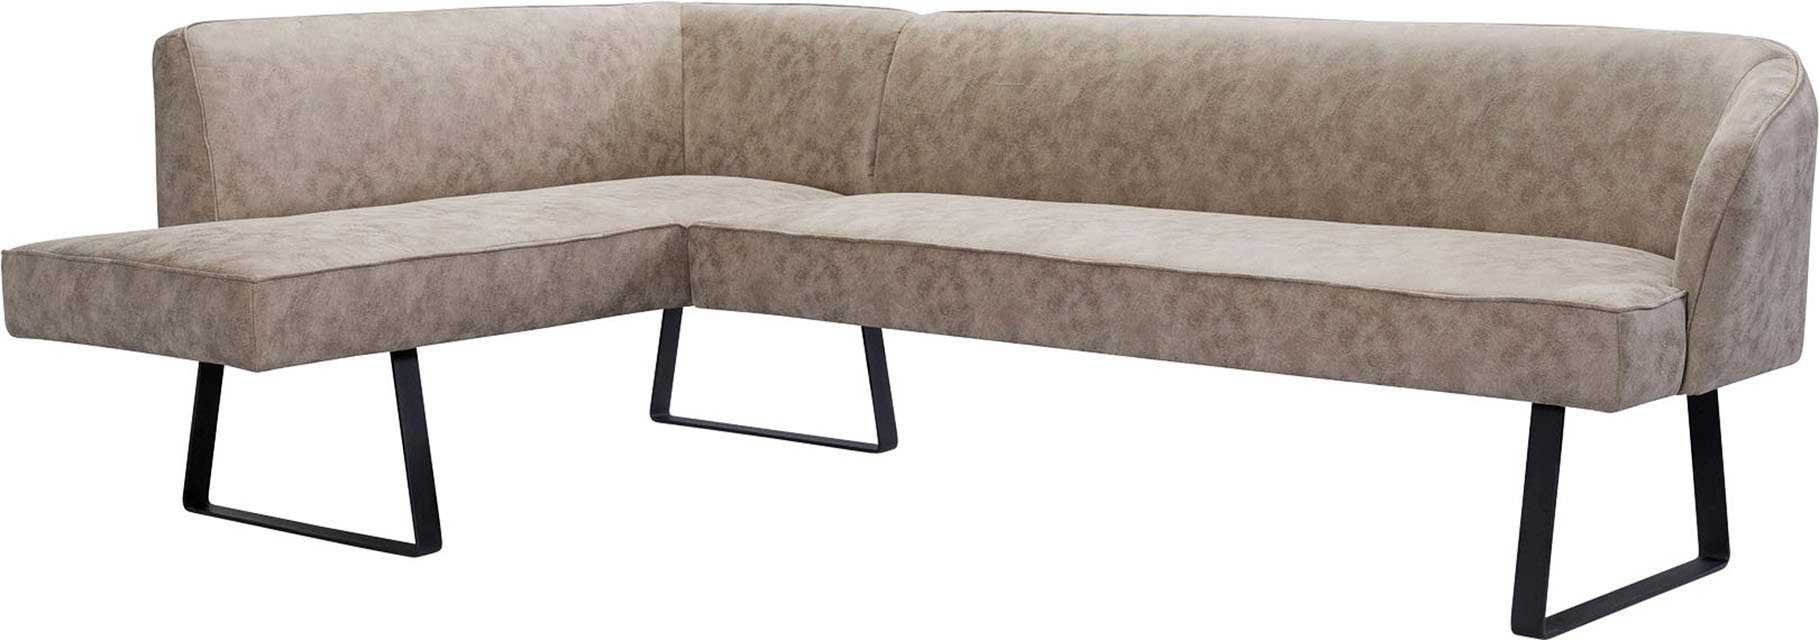 exxpo - sofa Americano, Eckbank mit und Metallfüßen, fashion in Bezug Keder Qualitäten verschiedenen